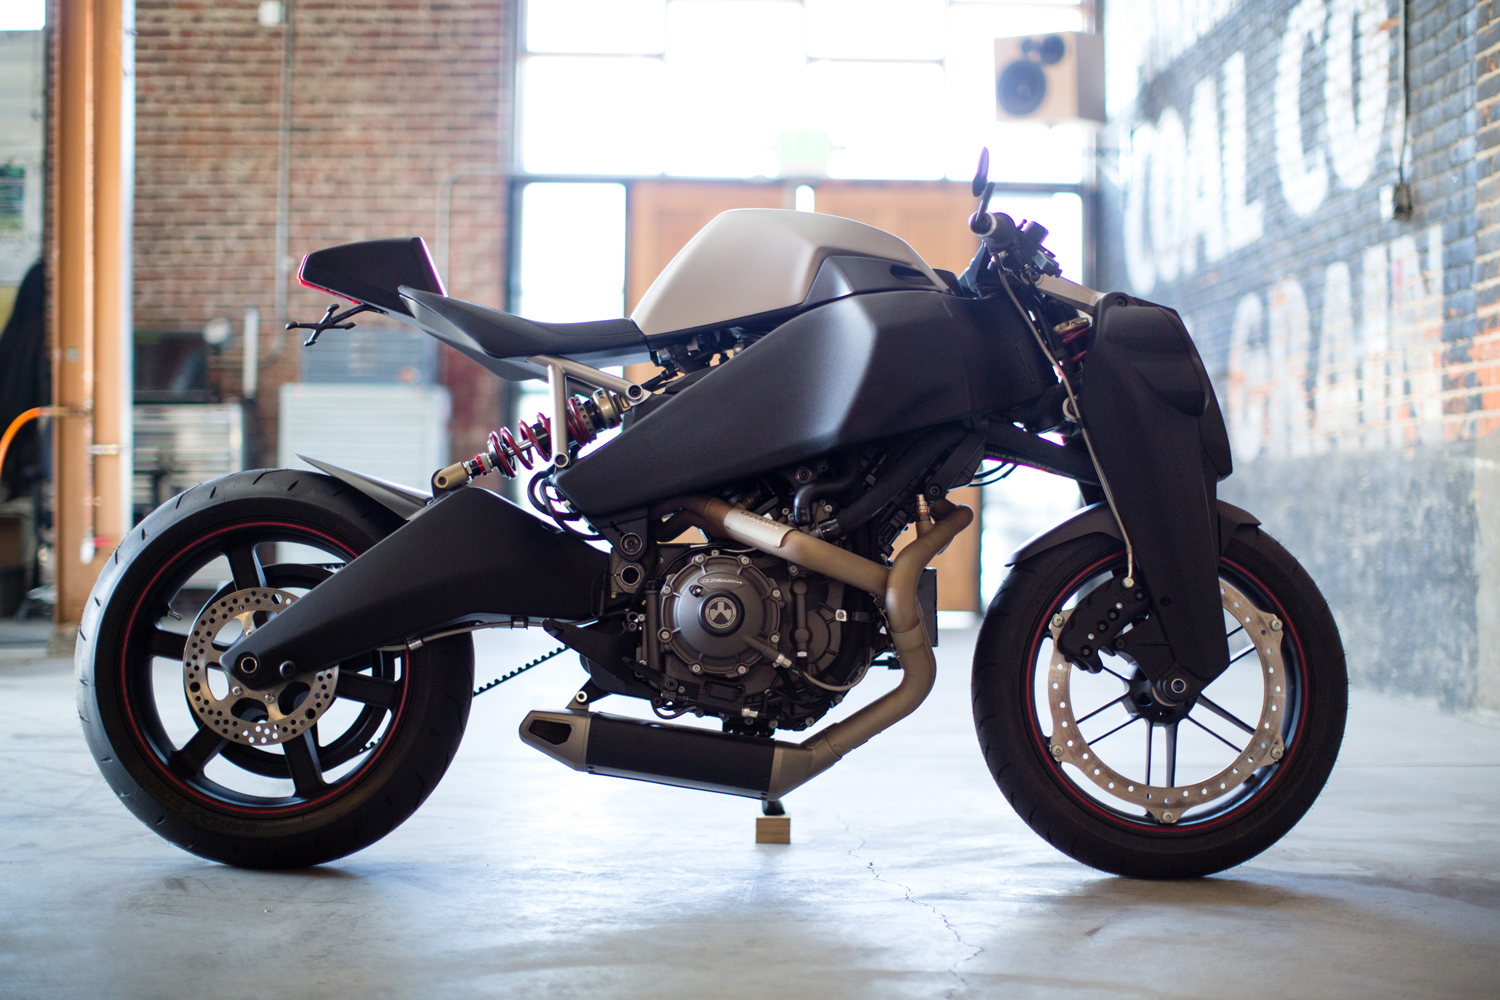 Ronin 47: a moto superesportiva com design futurista e edição limitada